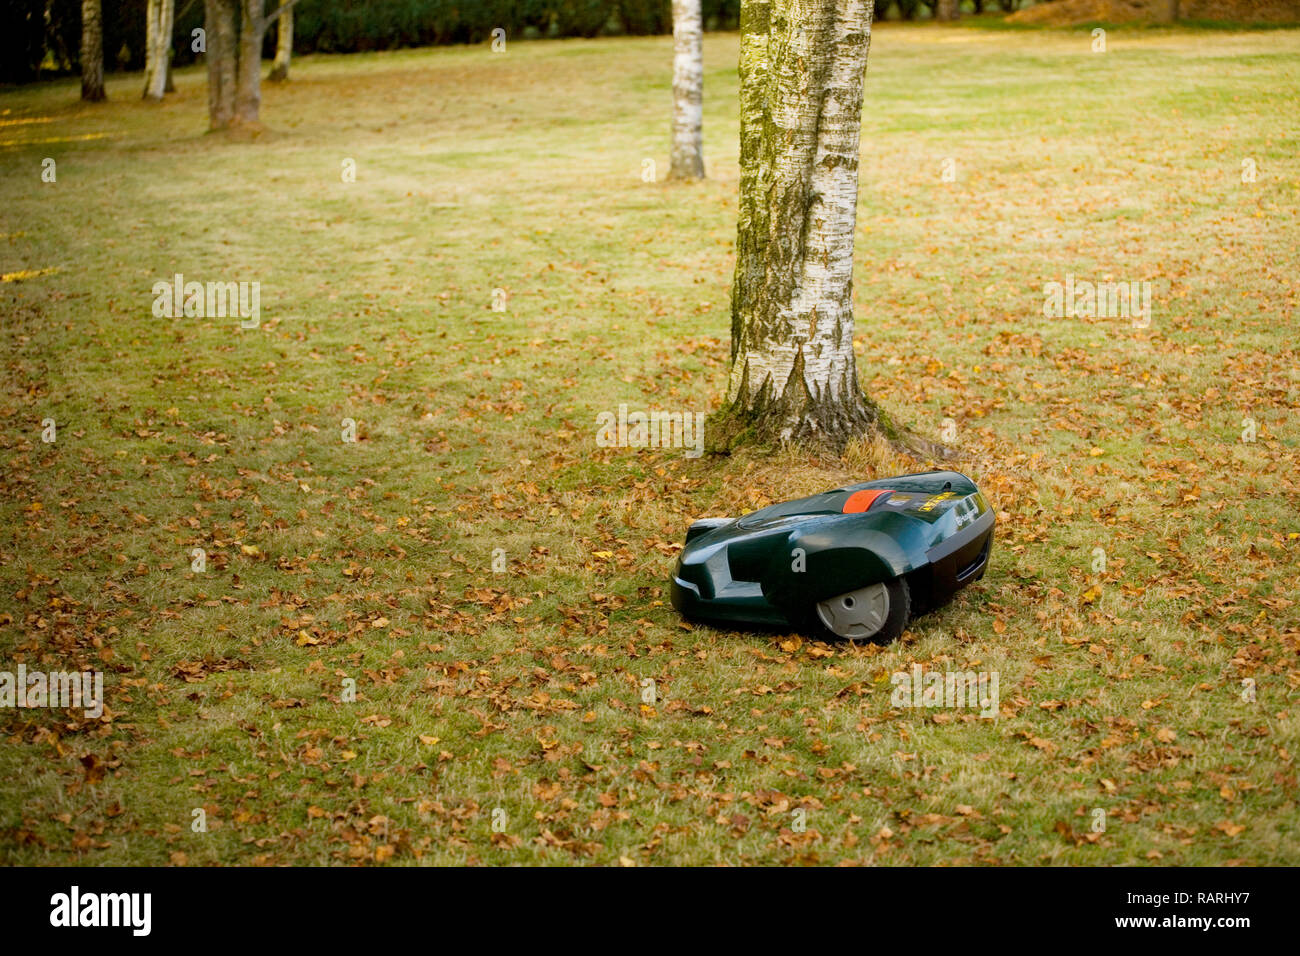 Tondeuse robot automatique coupé de l'herbe près des arbres et les feuilles d'automne Banque D'Images